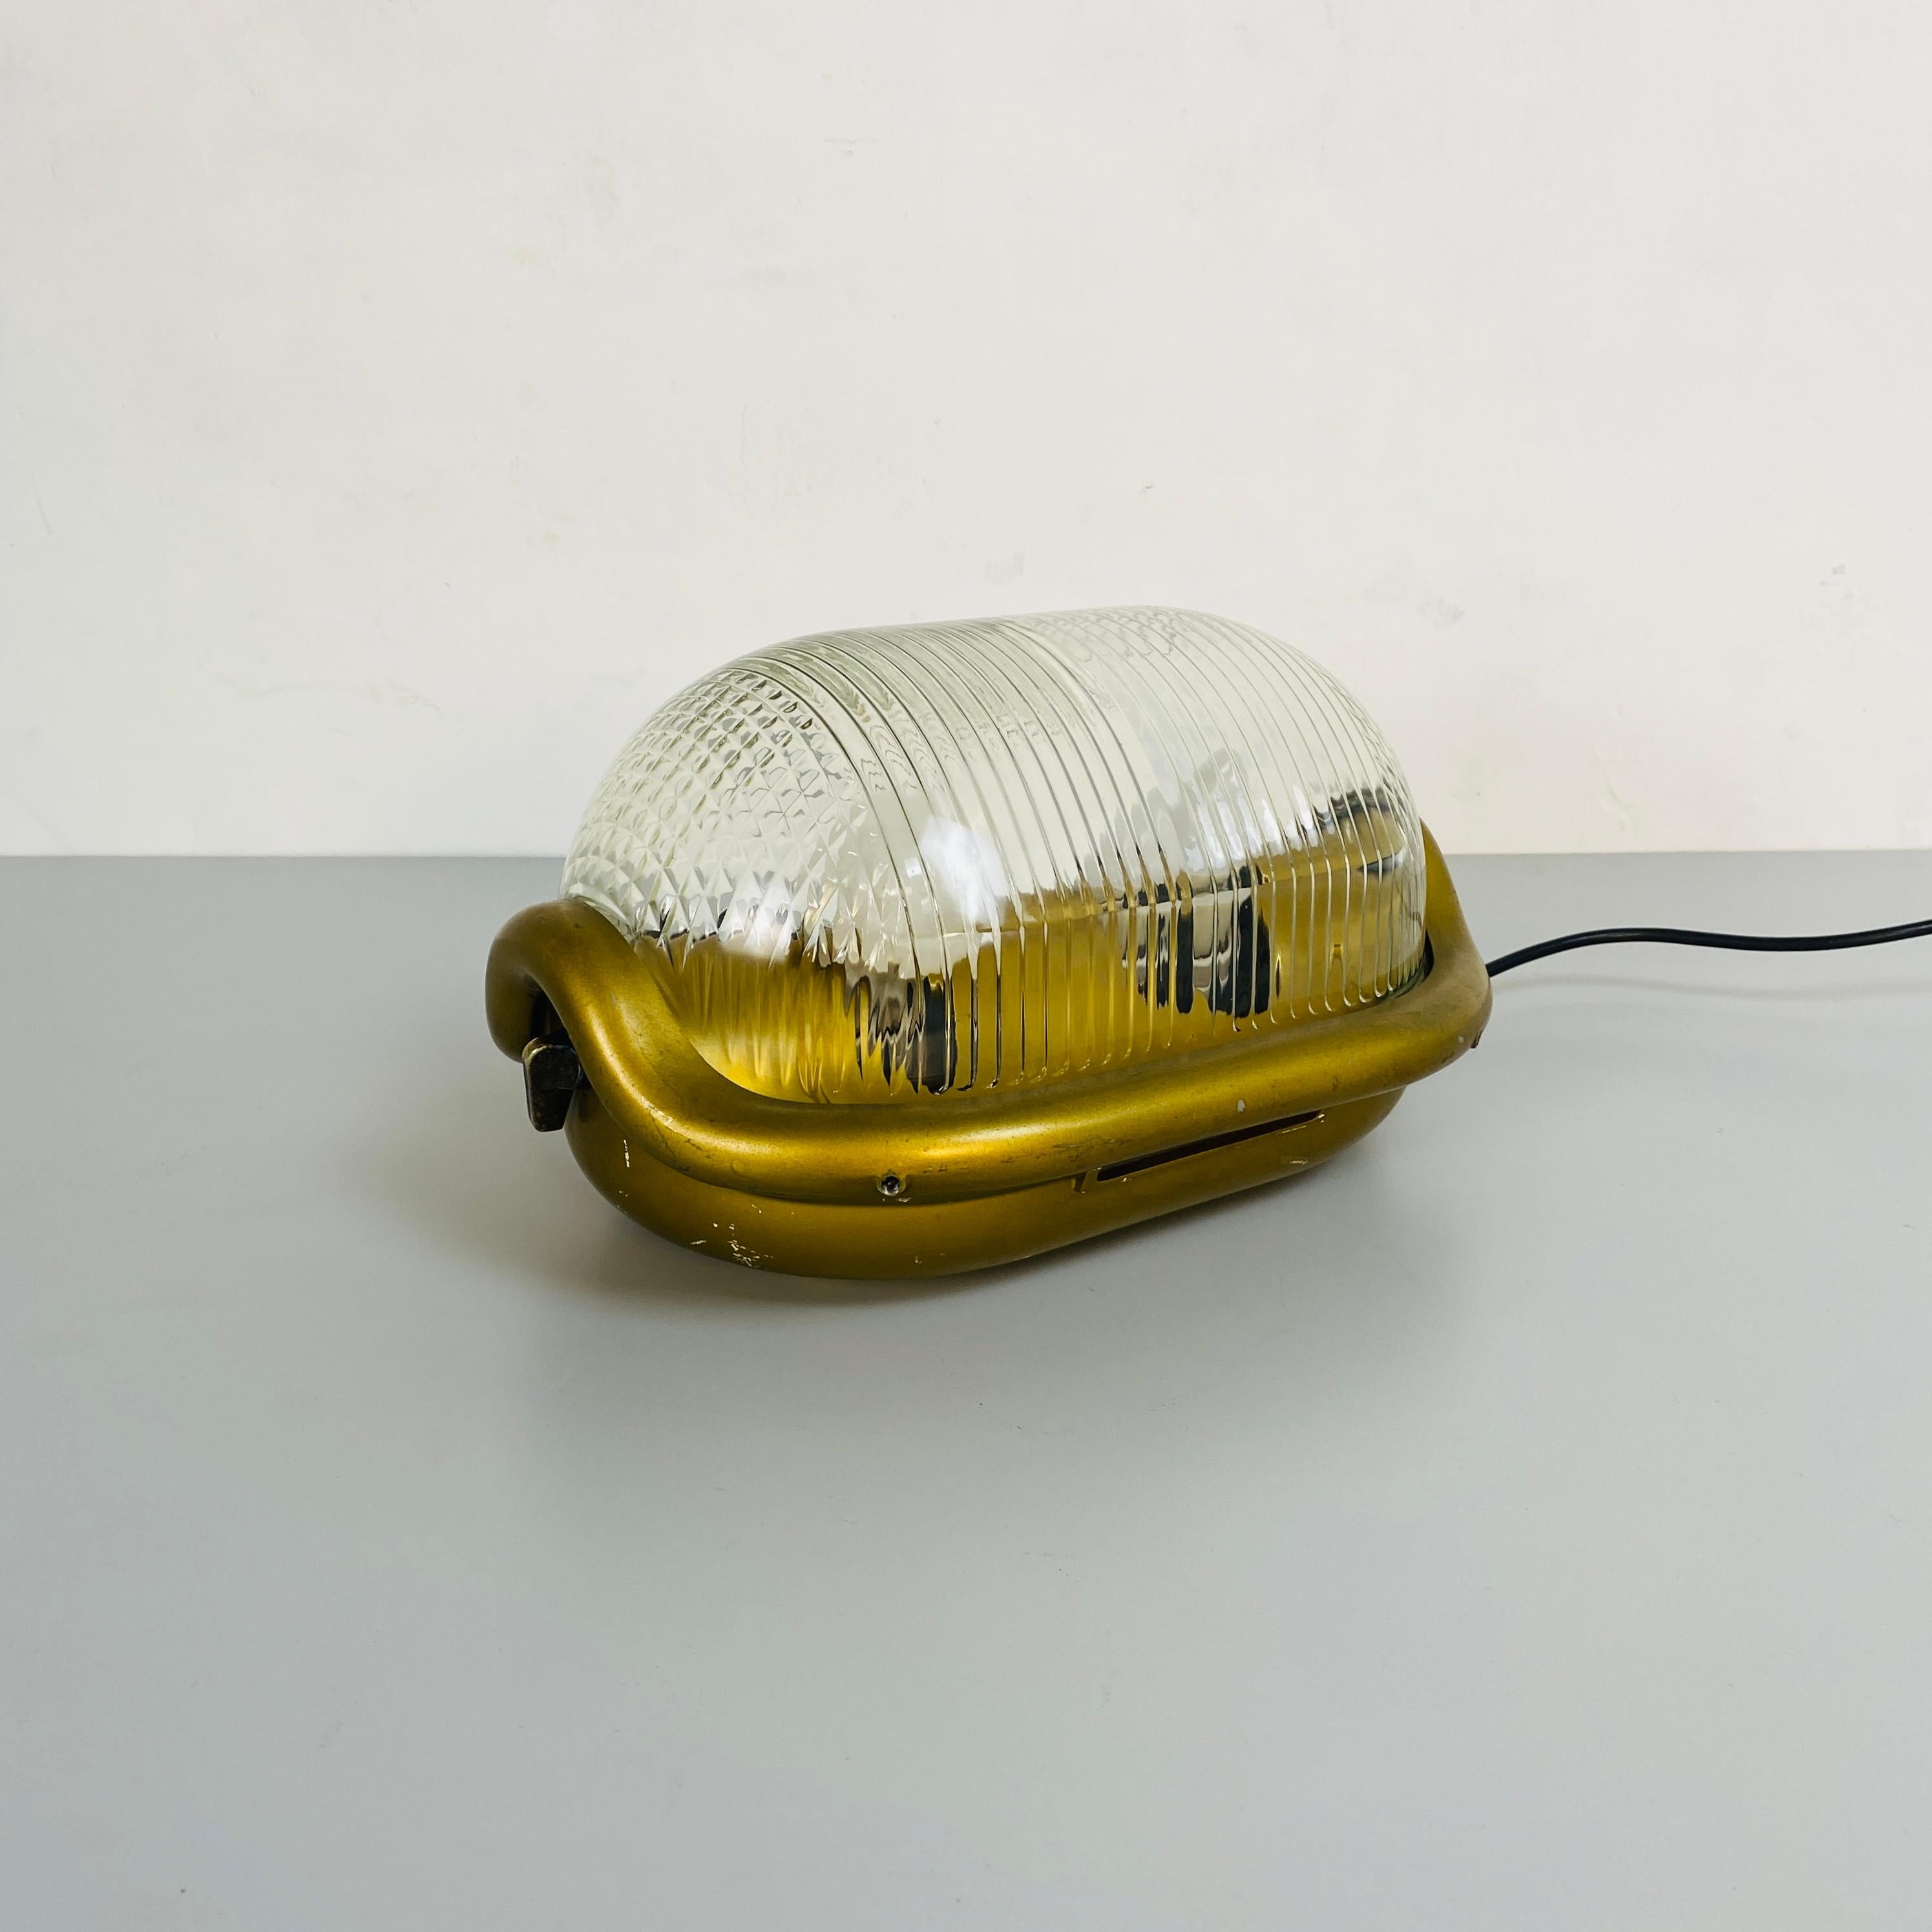 Lampe de table moderne du milieu du siècle mod. Walnut par Achille Castiglioni pour Flos, 1970
Lampe en noyer, de forme arrondie, la structure est en aluminium moulé sous pression épais et peint en jaune ocre, le diffuseur est en verre pressé